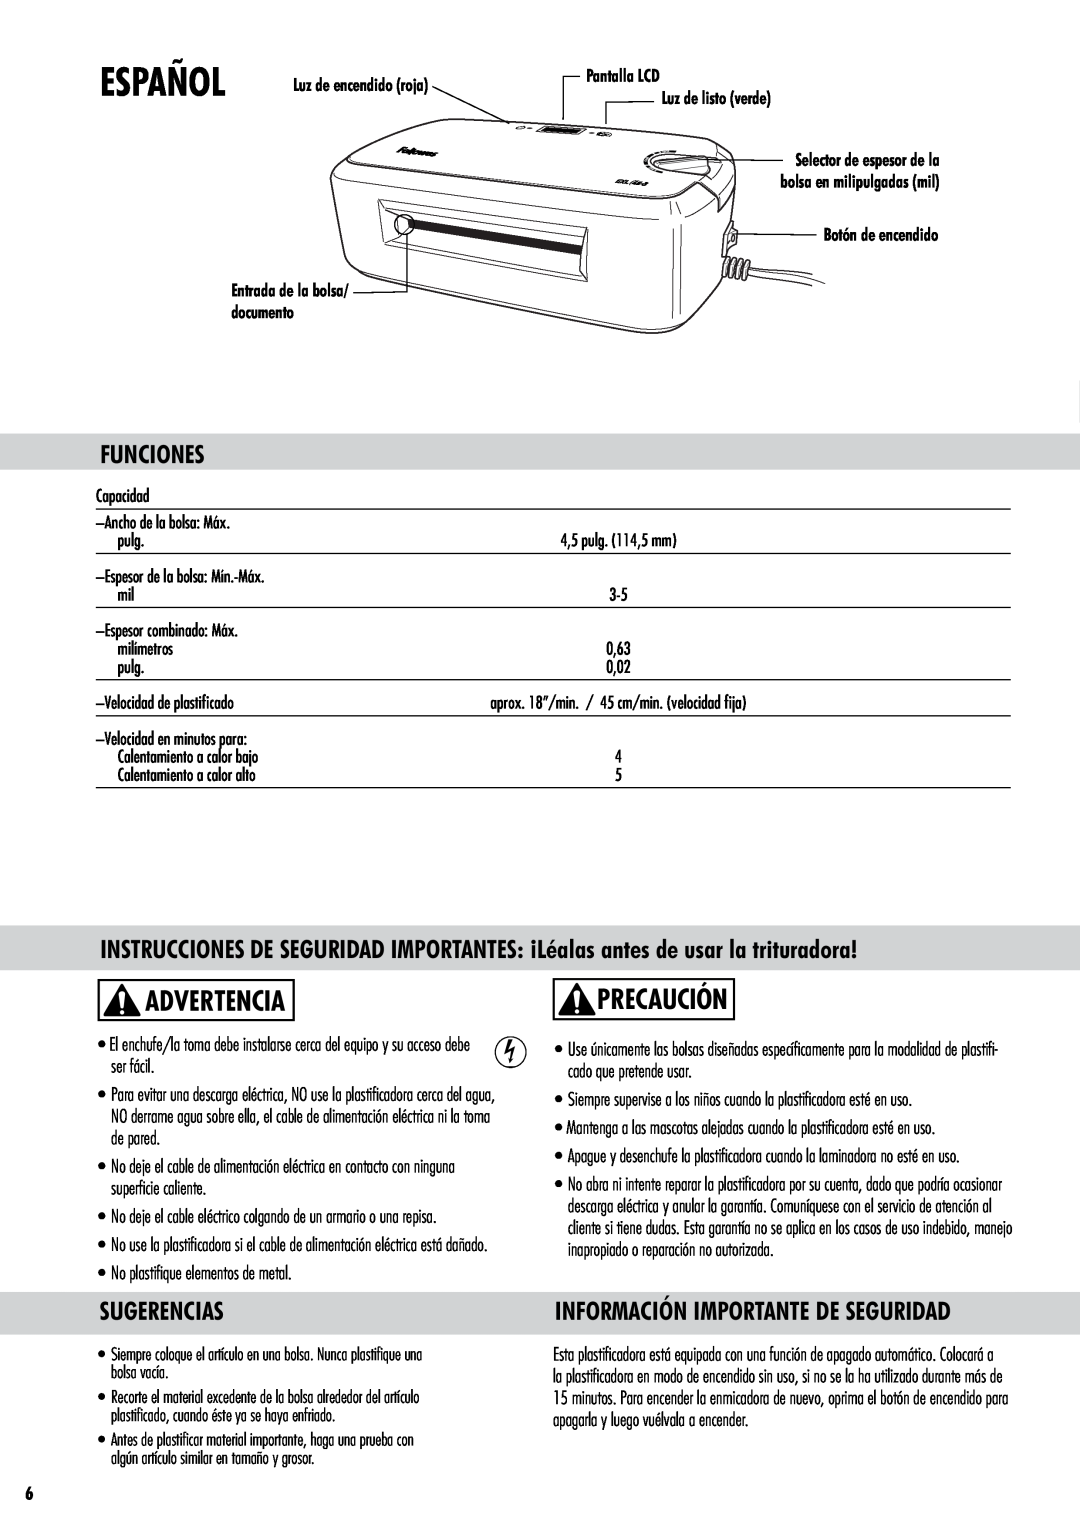 Fellowes EXL45-3 manual Español, Advertencia, Precaución, Funciones, Sugerencias, Información Importante De Seguridad 